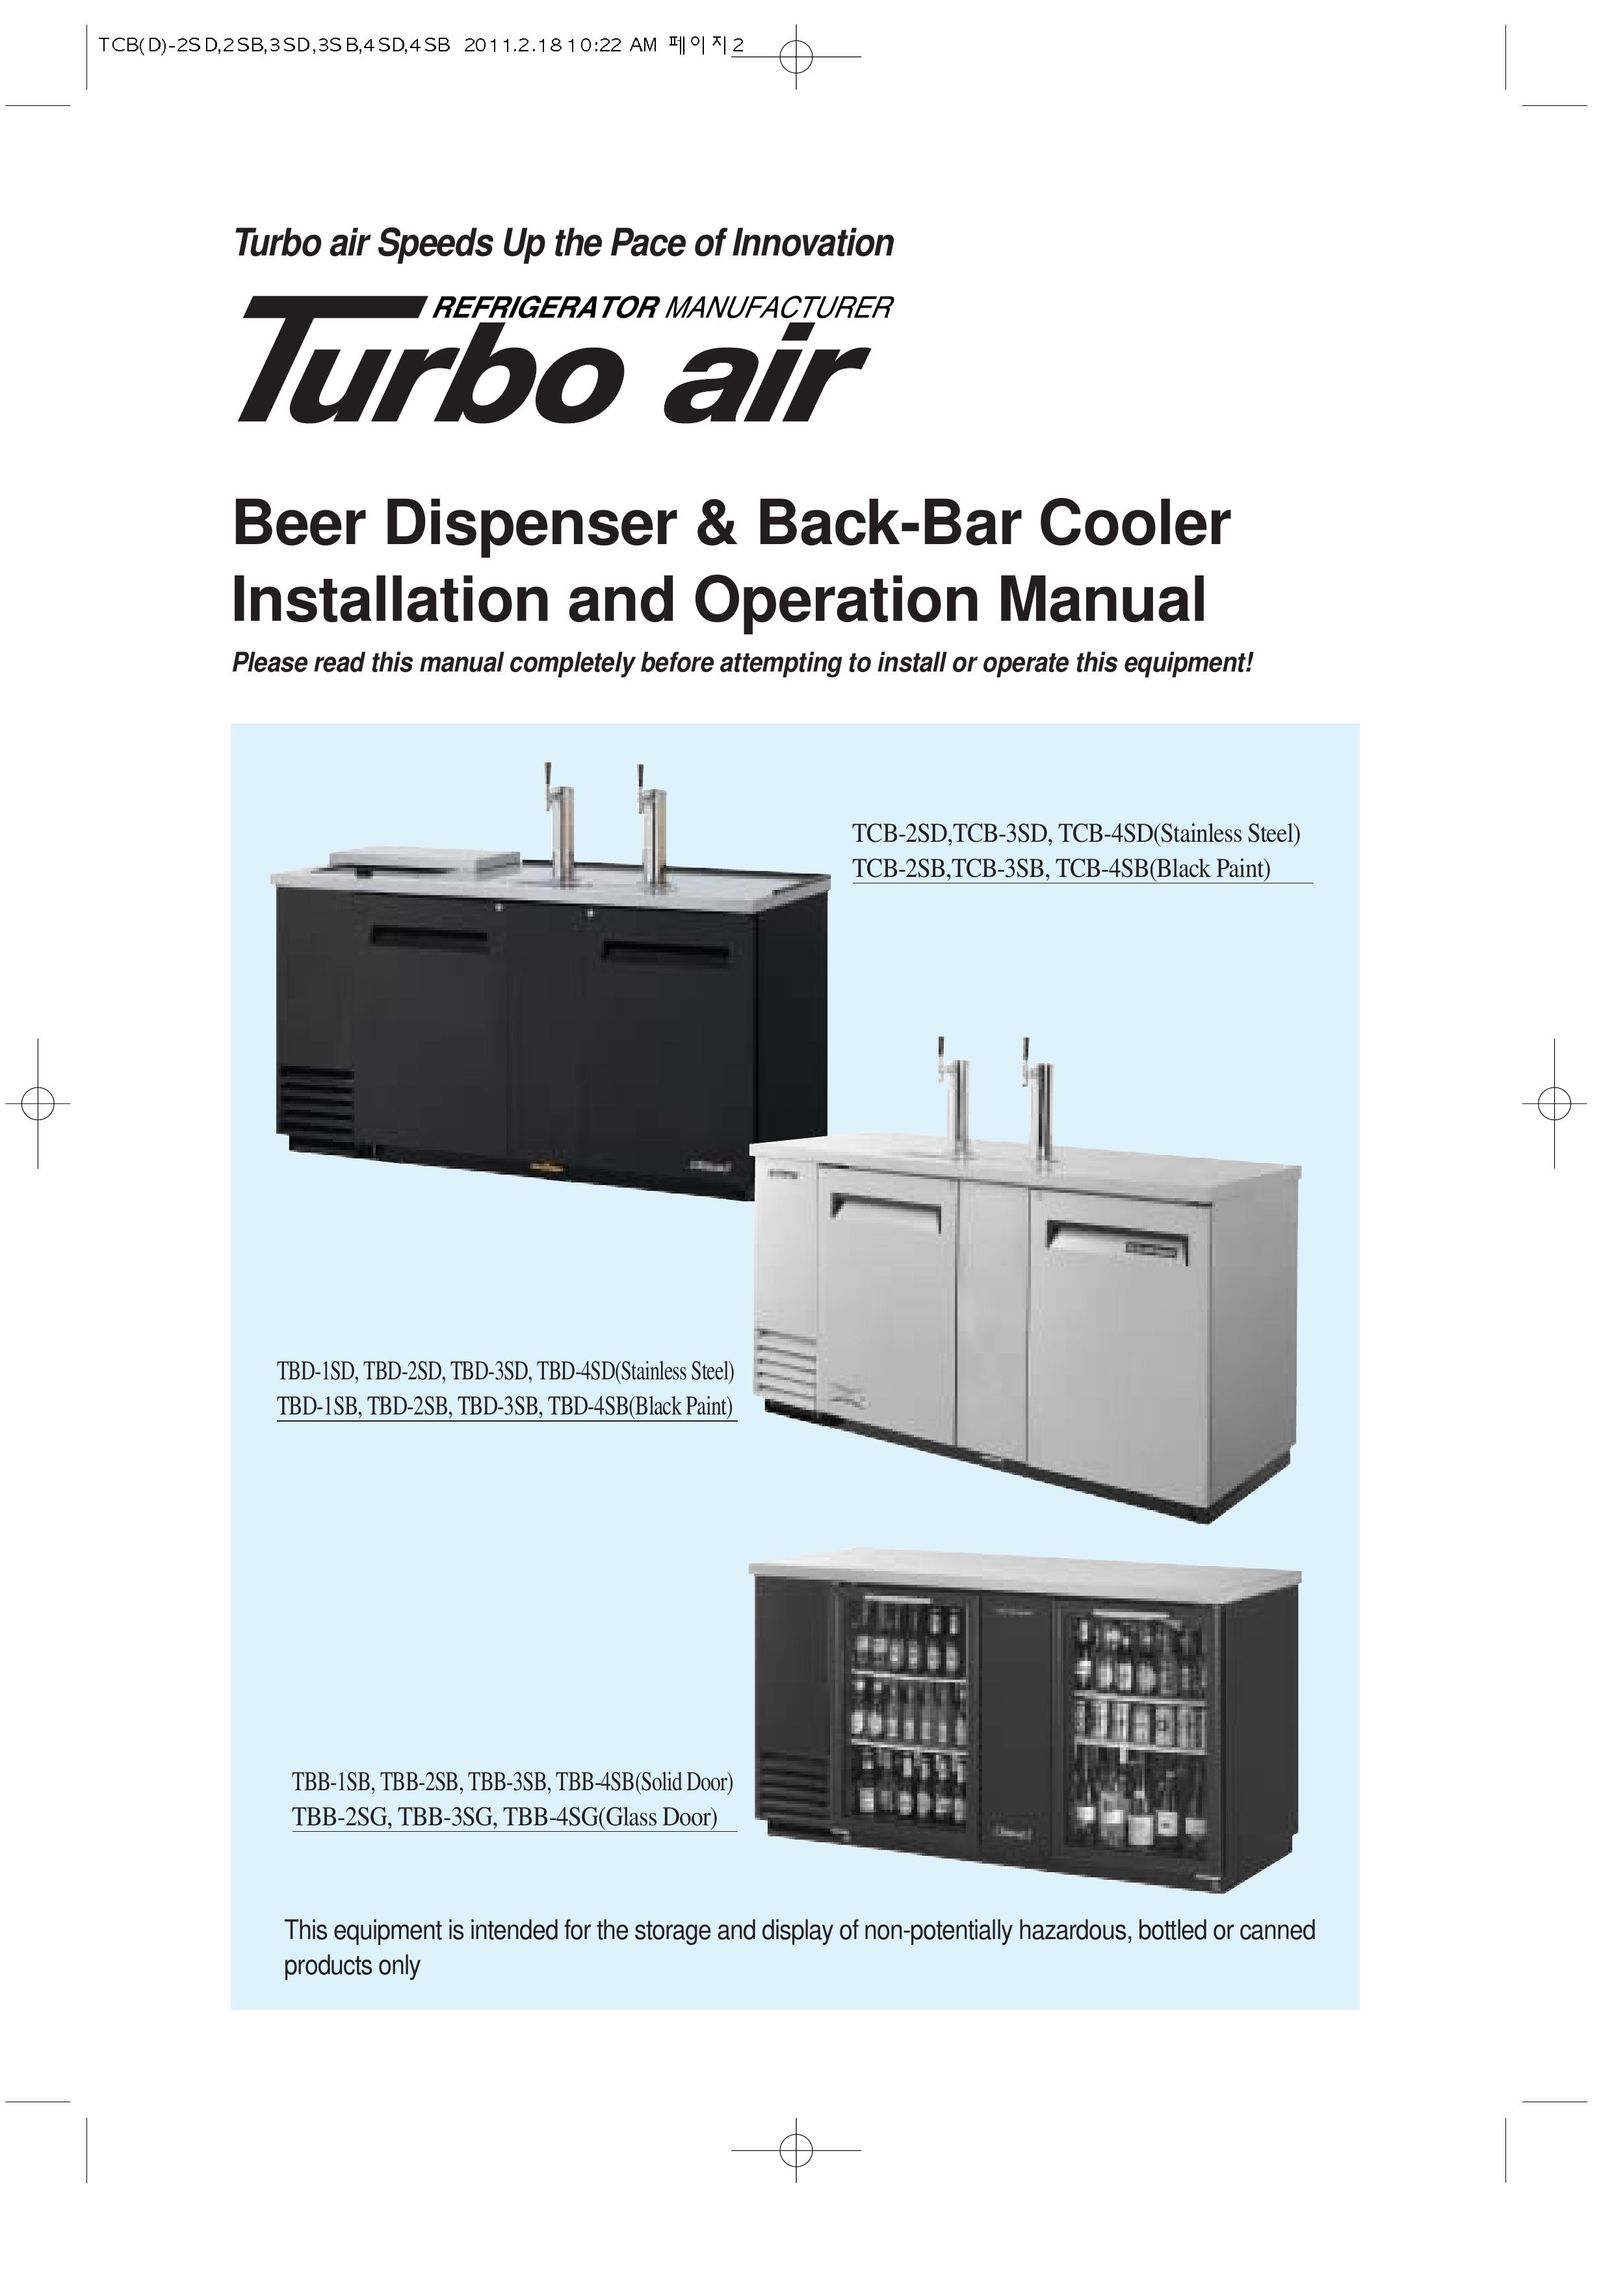 Turbo Air TCB-2SB Beverage Dispenser User Manual